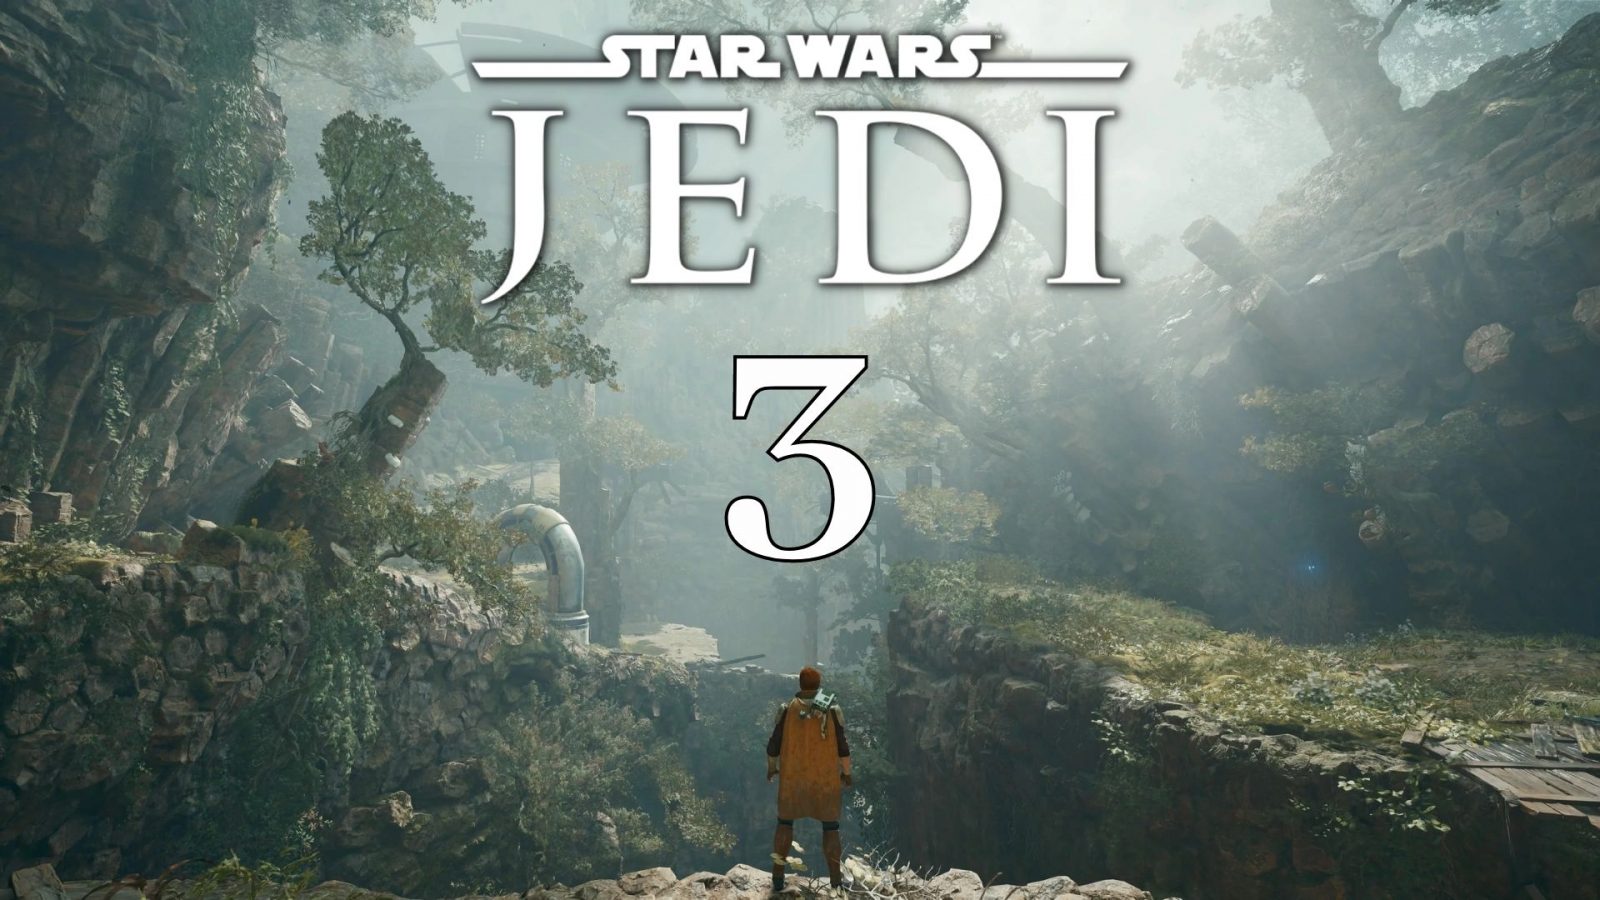 Star Wars Jedi 3 oppfølgerpotensial covertittel